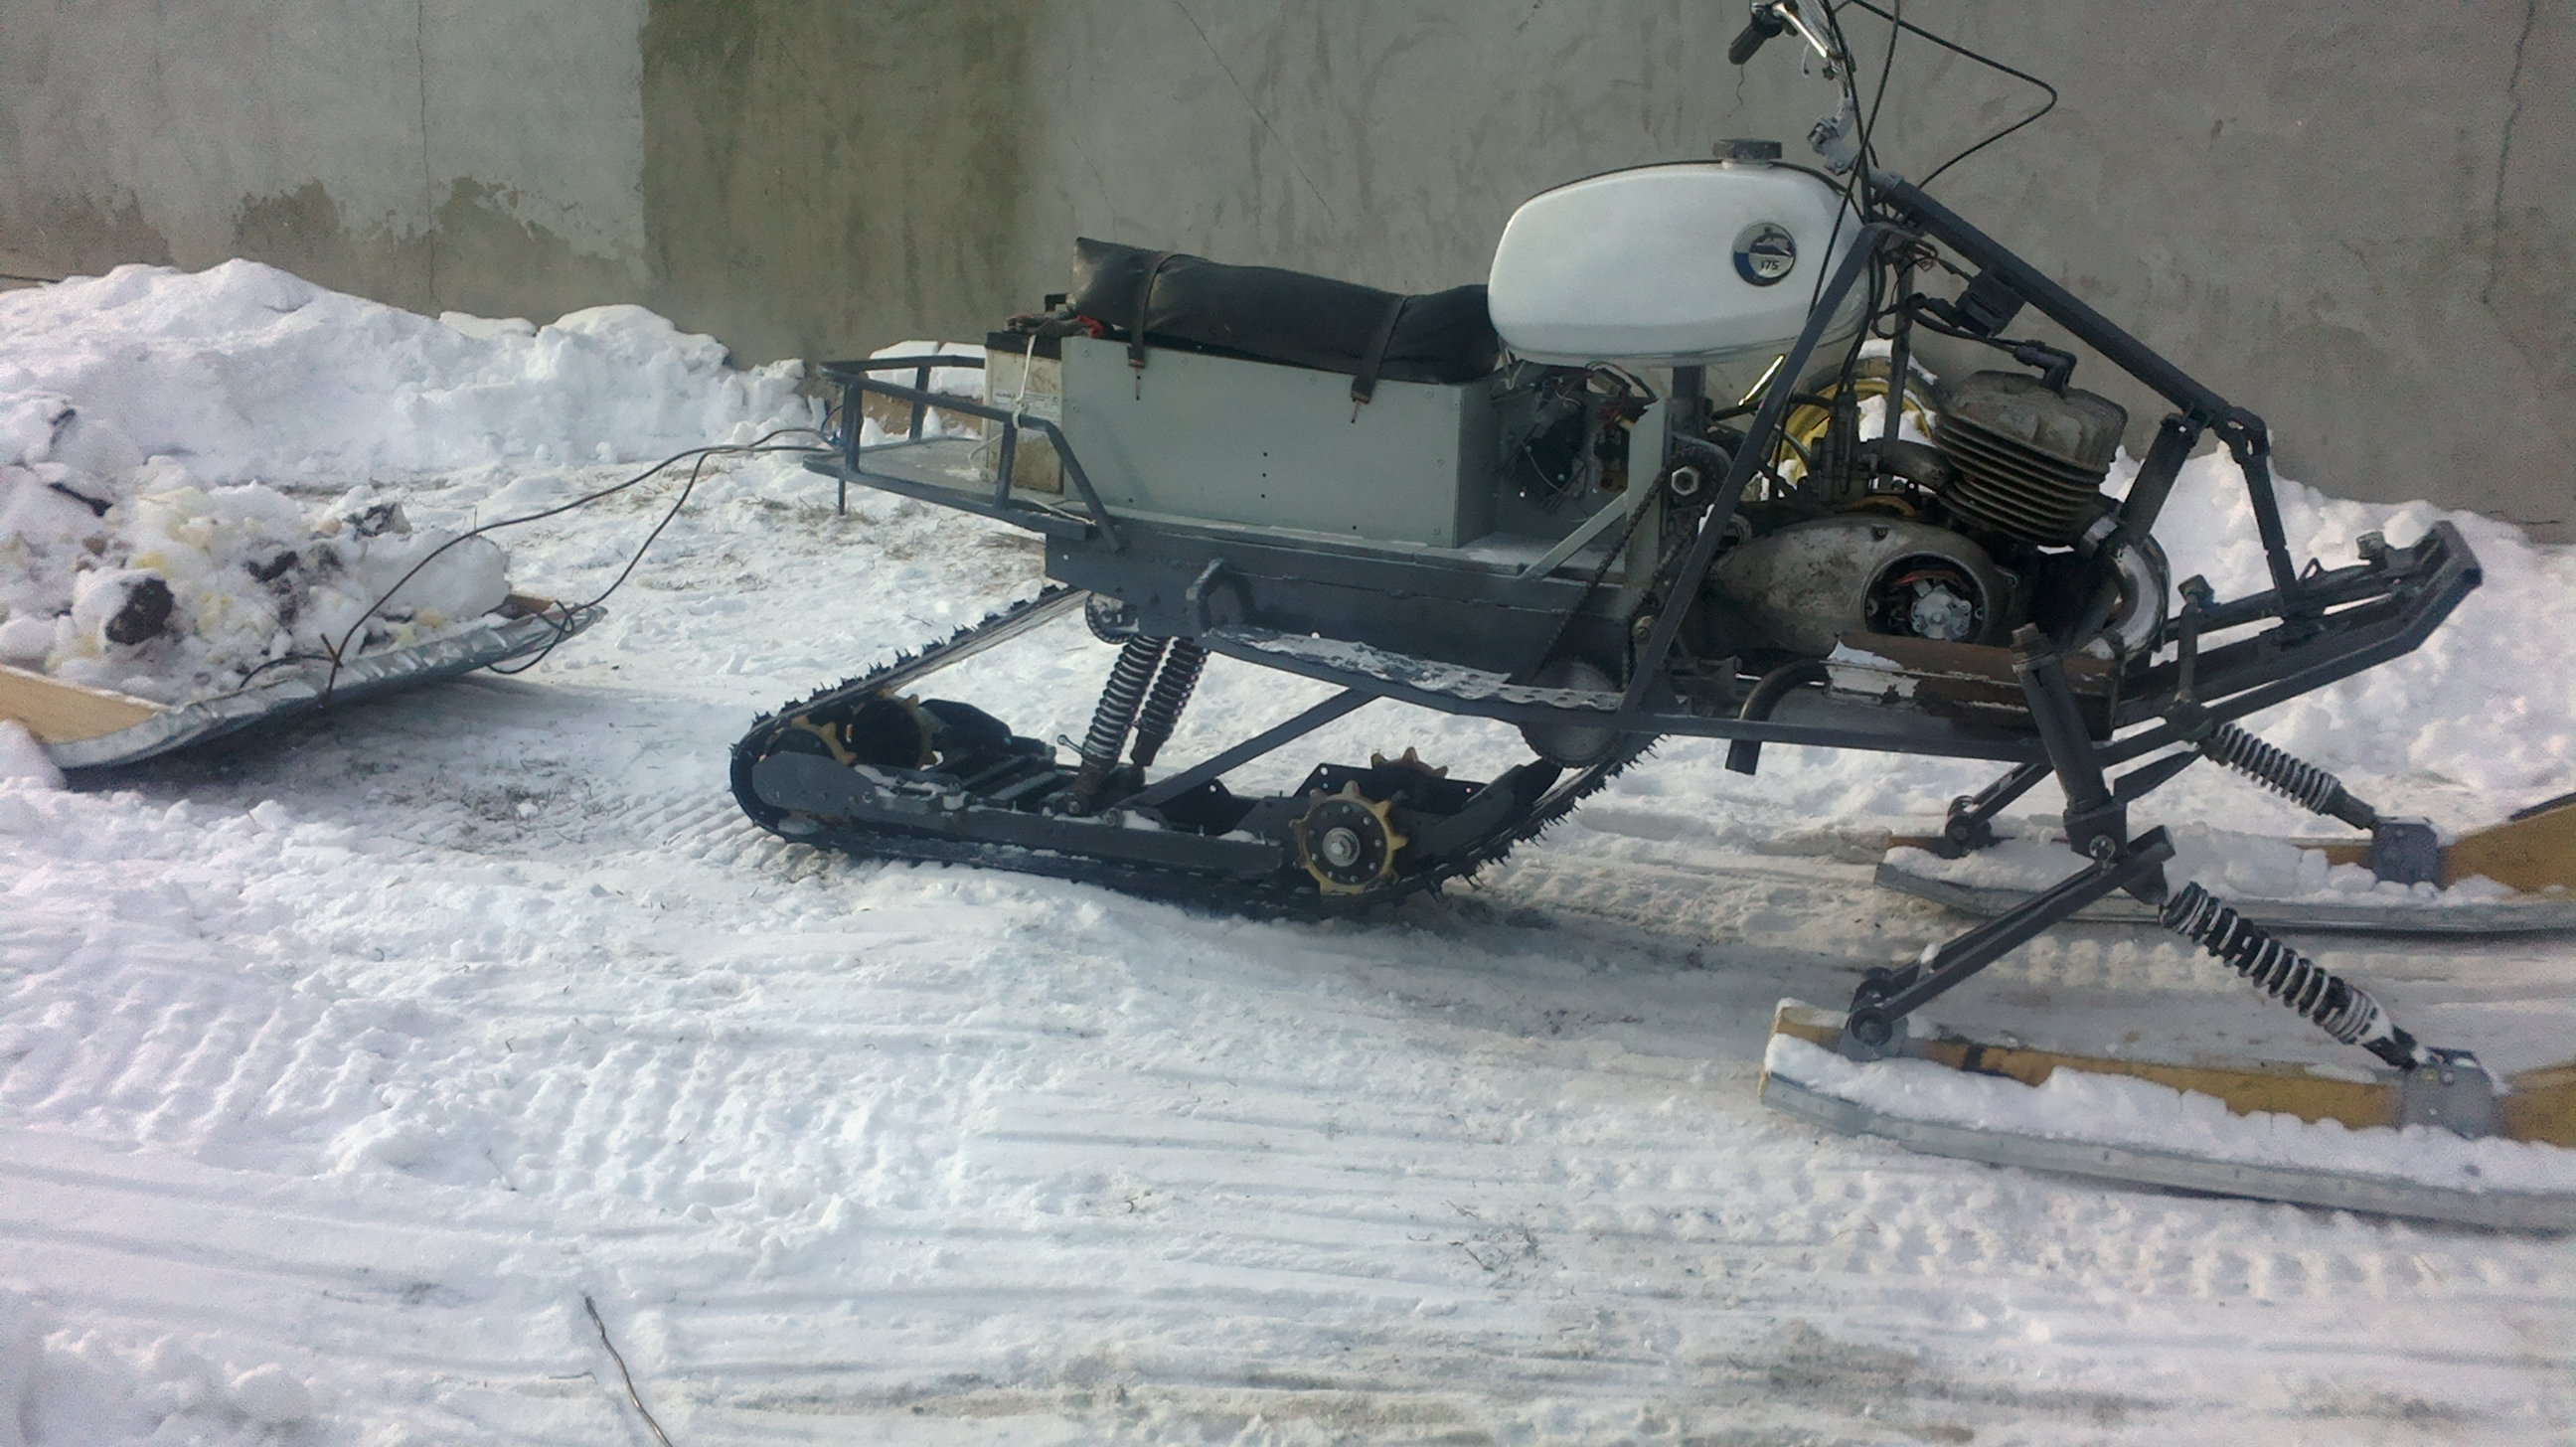 Как сделать снегоход из мотоблока своими руками: гусеничный, на колесах, для рыбалки